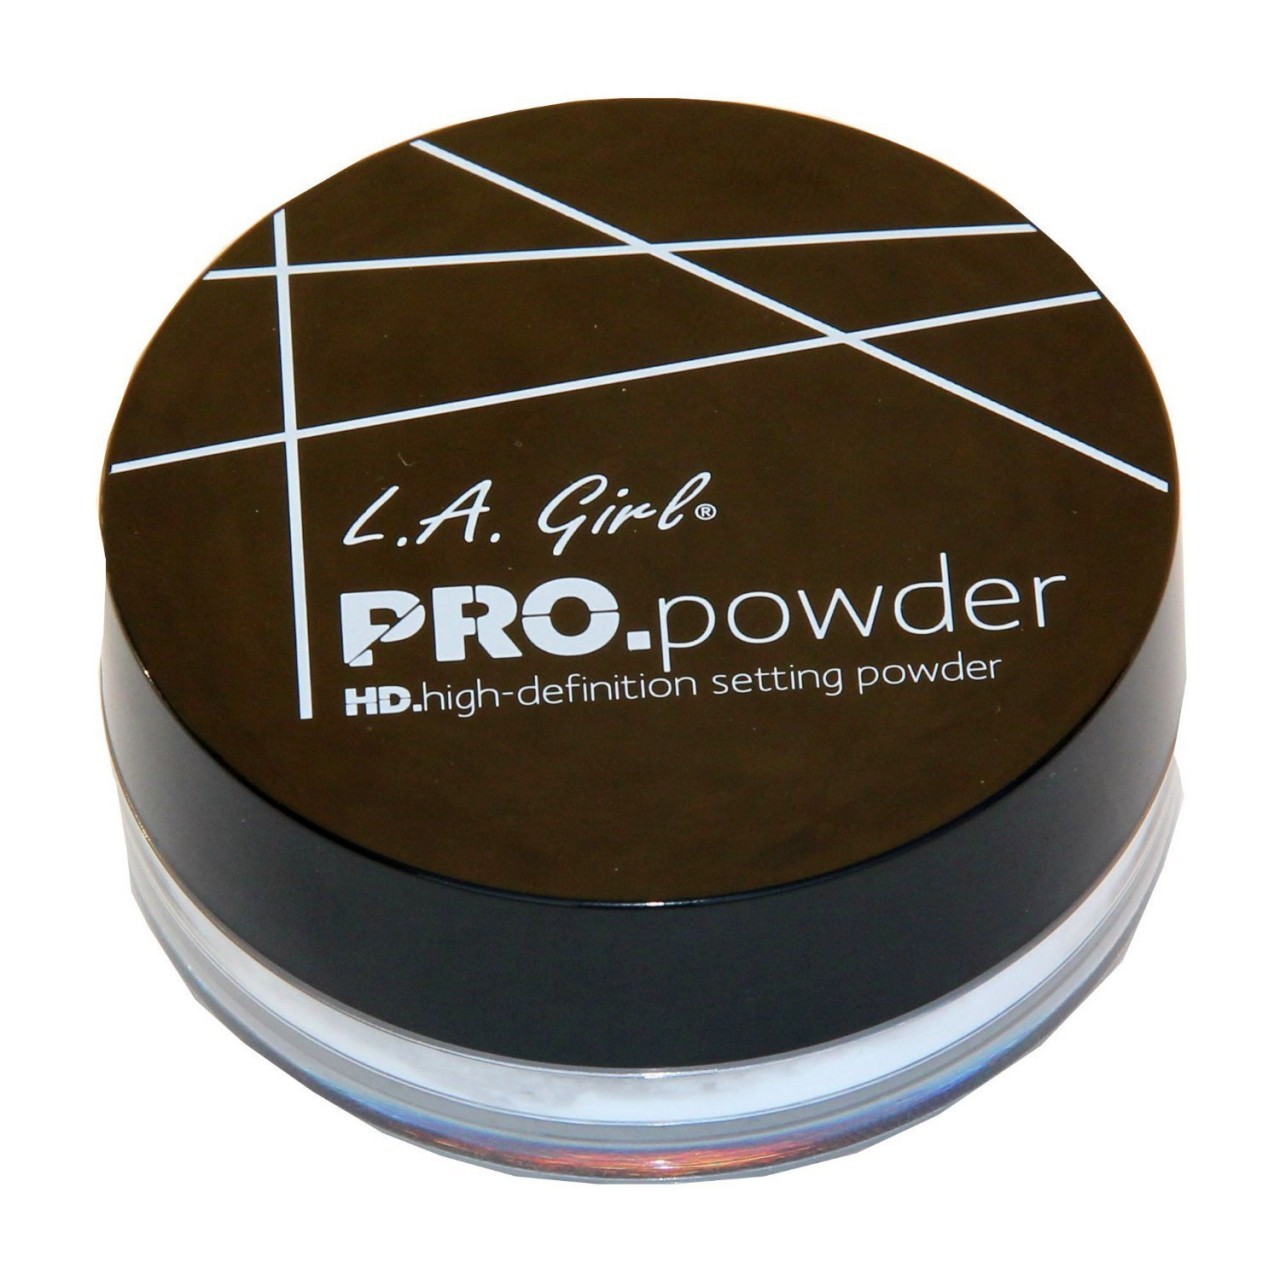 L.A. Girl Pro-powder High-Definition Setting Powder, Translucent, 5g